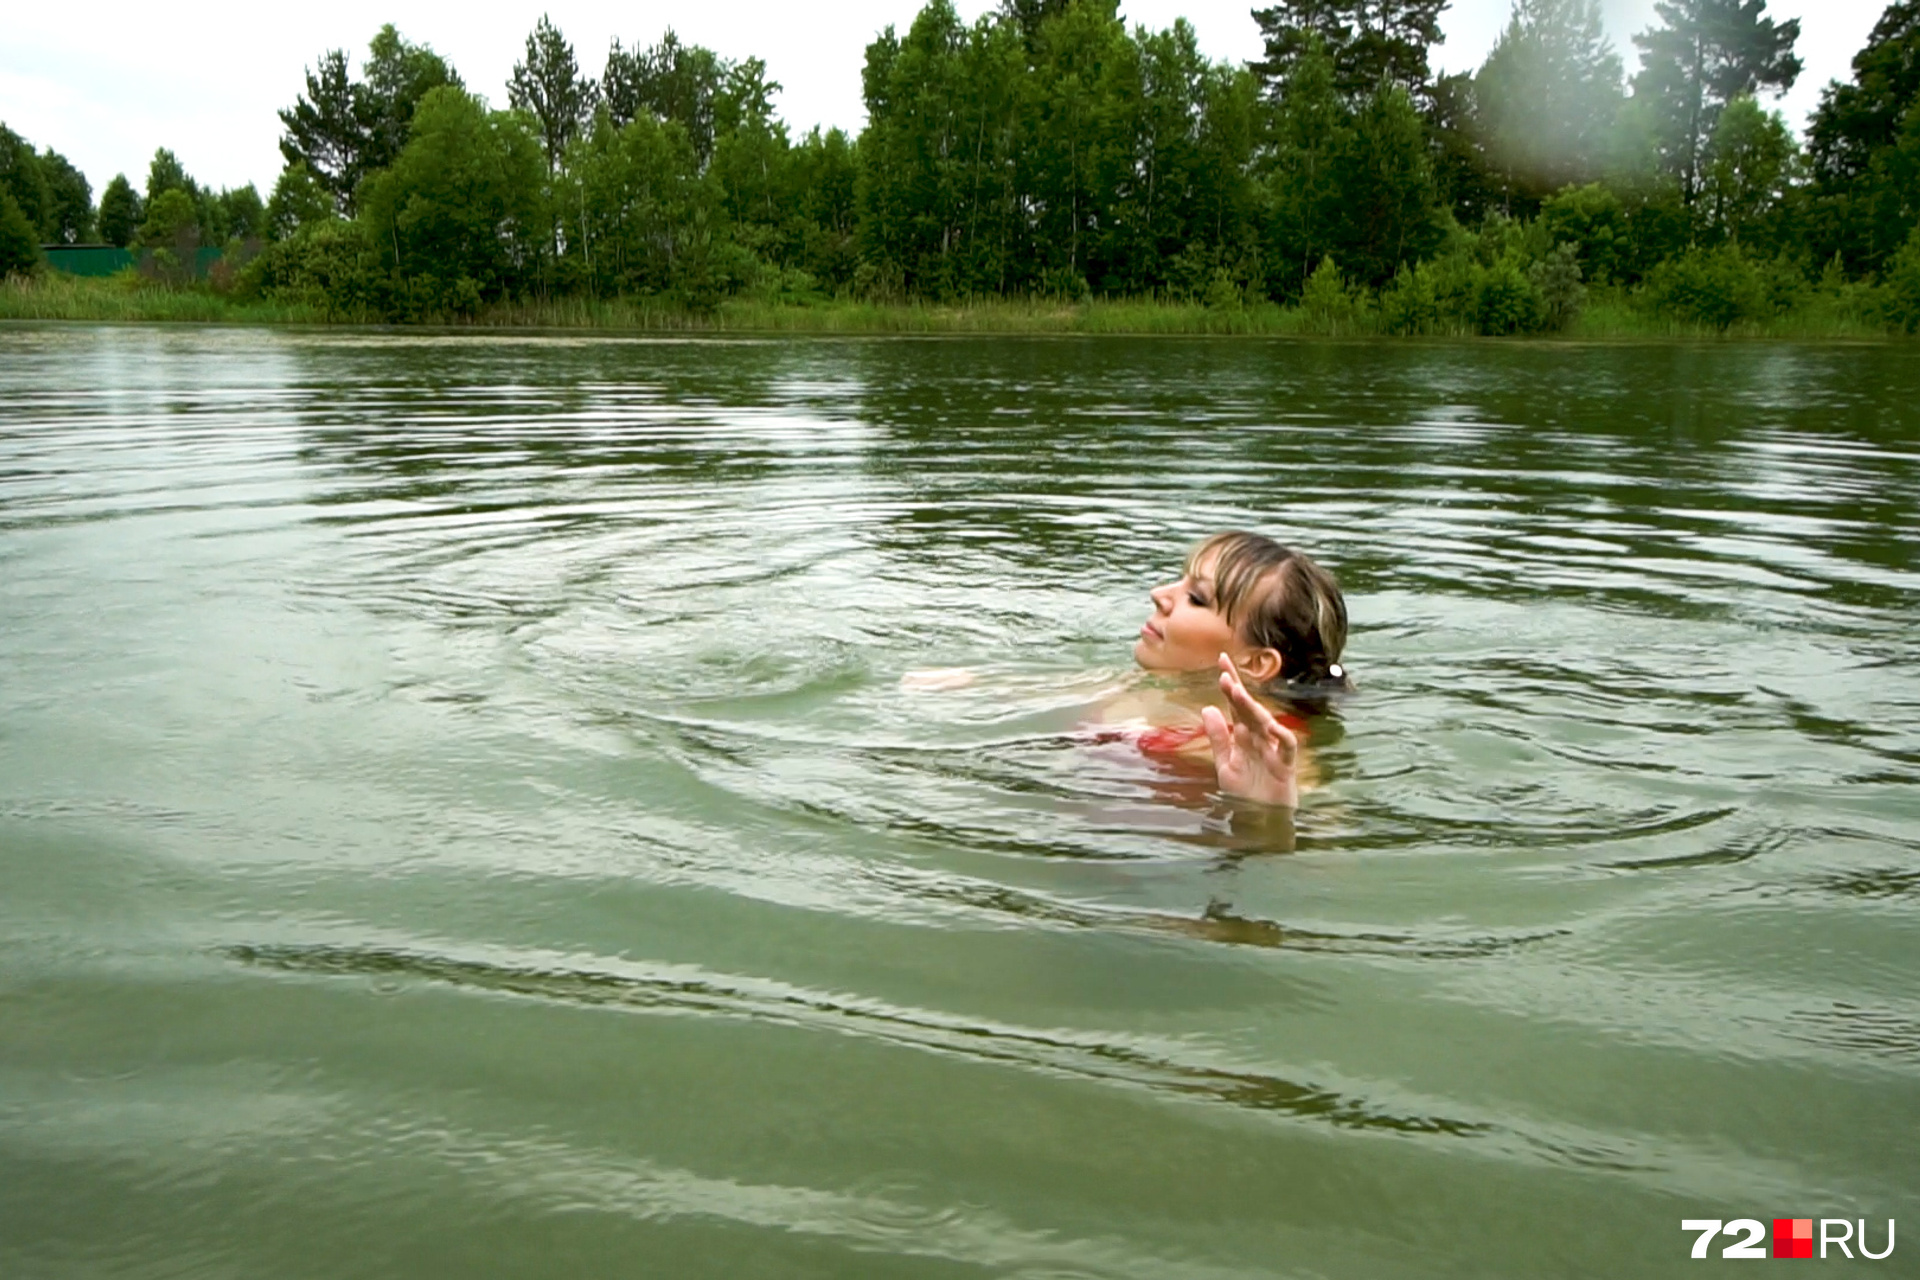 Человек выйдя из реки после купания даже. Купаться в озере. Купание в реке. Девушки купаются в озере. Люди купаются в озере.